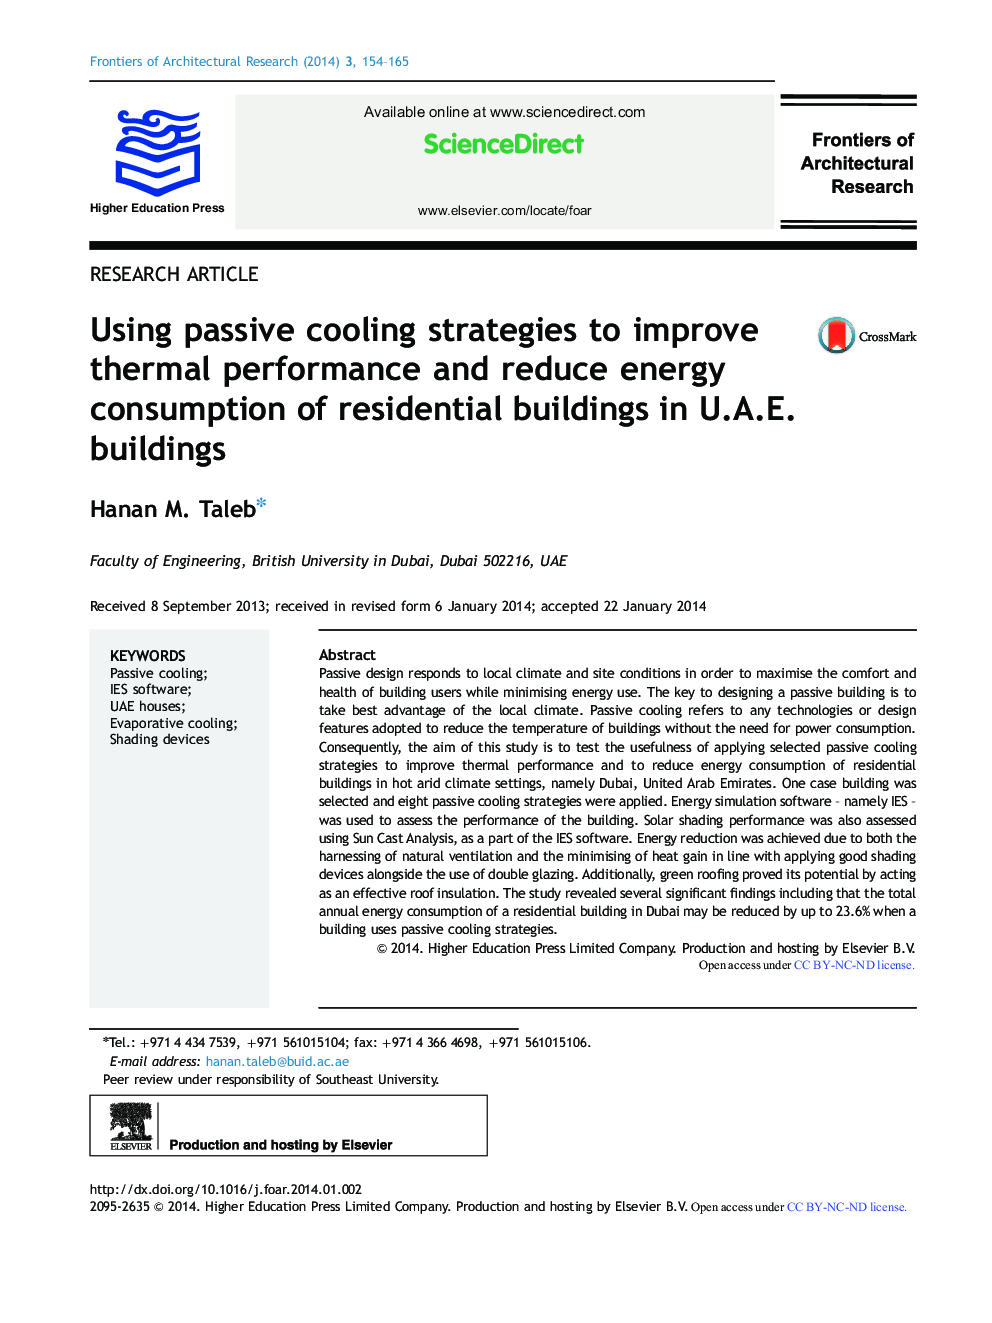 استفاده از استراتژی های خنک کننده غیرفعال برای بهبود عملکرد حرارتی و کاهش مصرف انرژی ساختمان های مسکونی در ساختمان های U.A.E. 